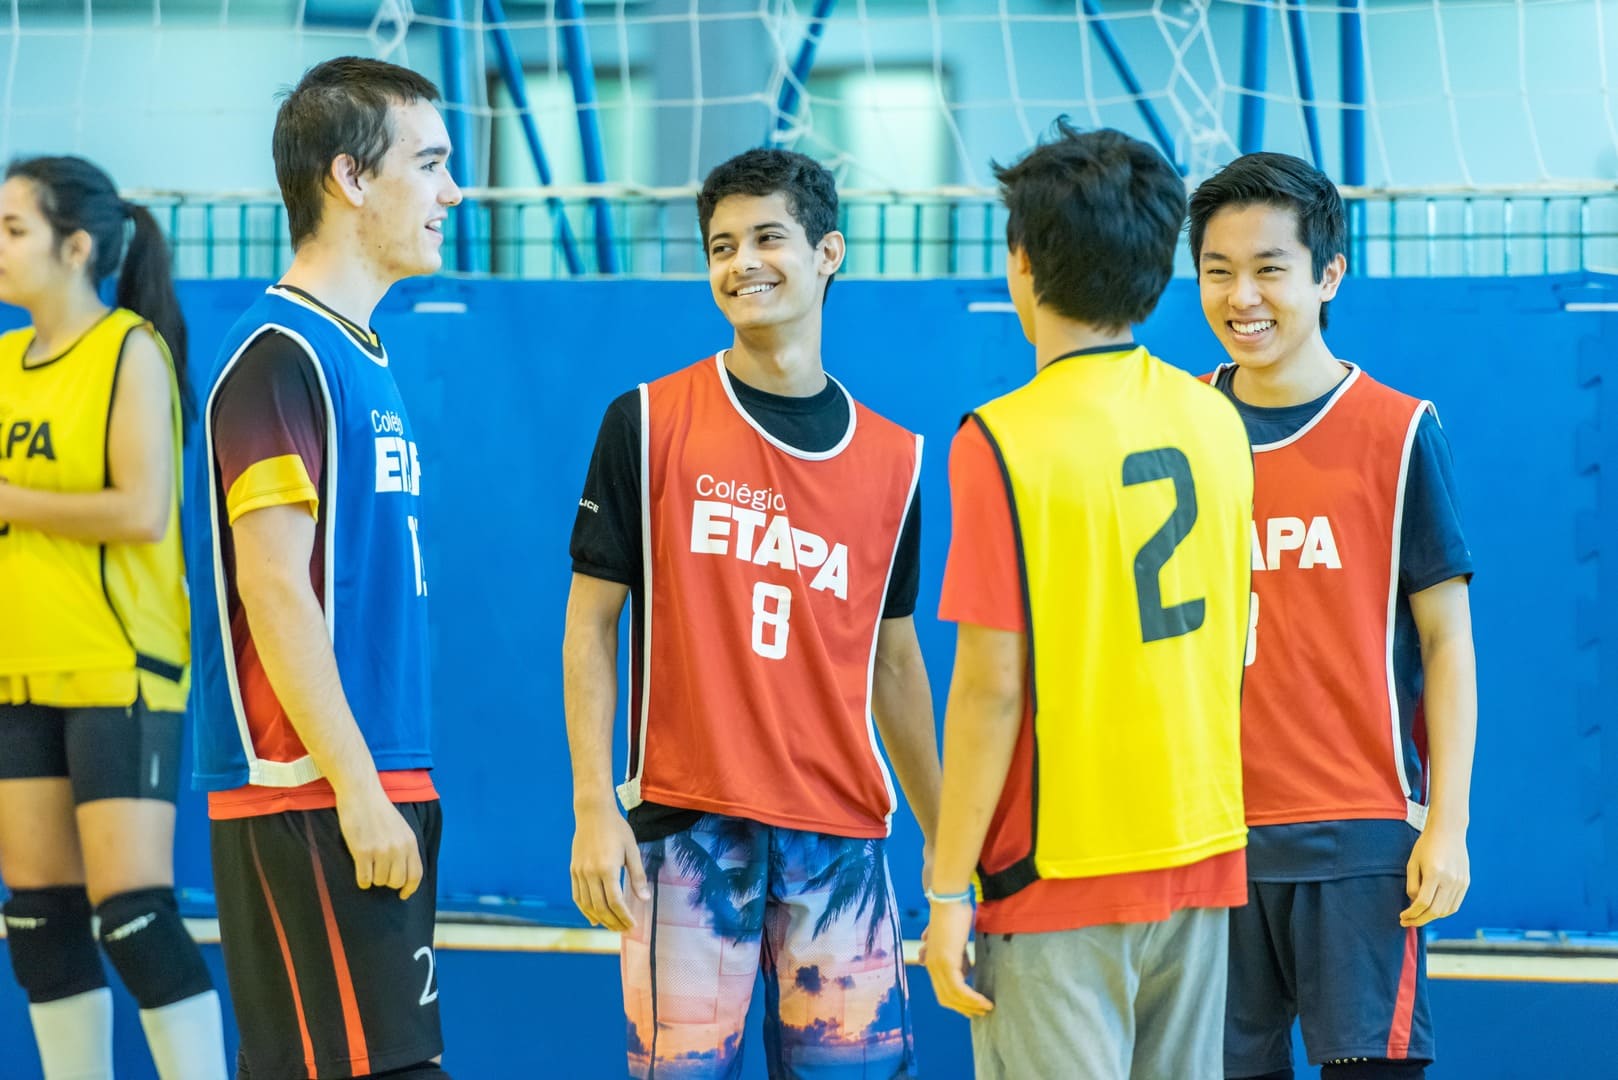 Copa Etapa Valinhos promove torneios esportivos entre alunos, ex-alunos e professores.